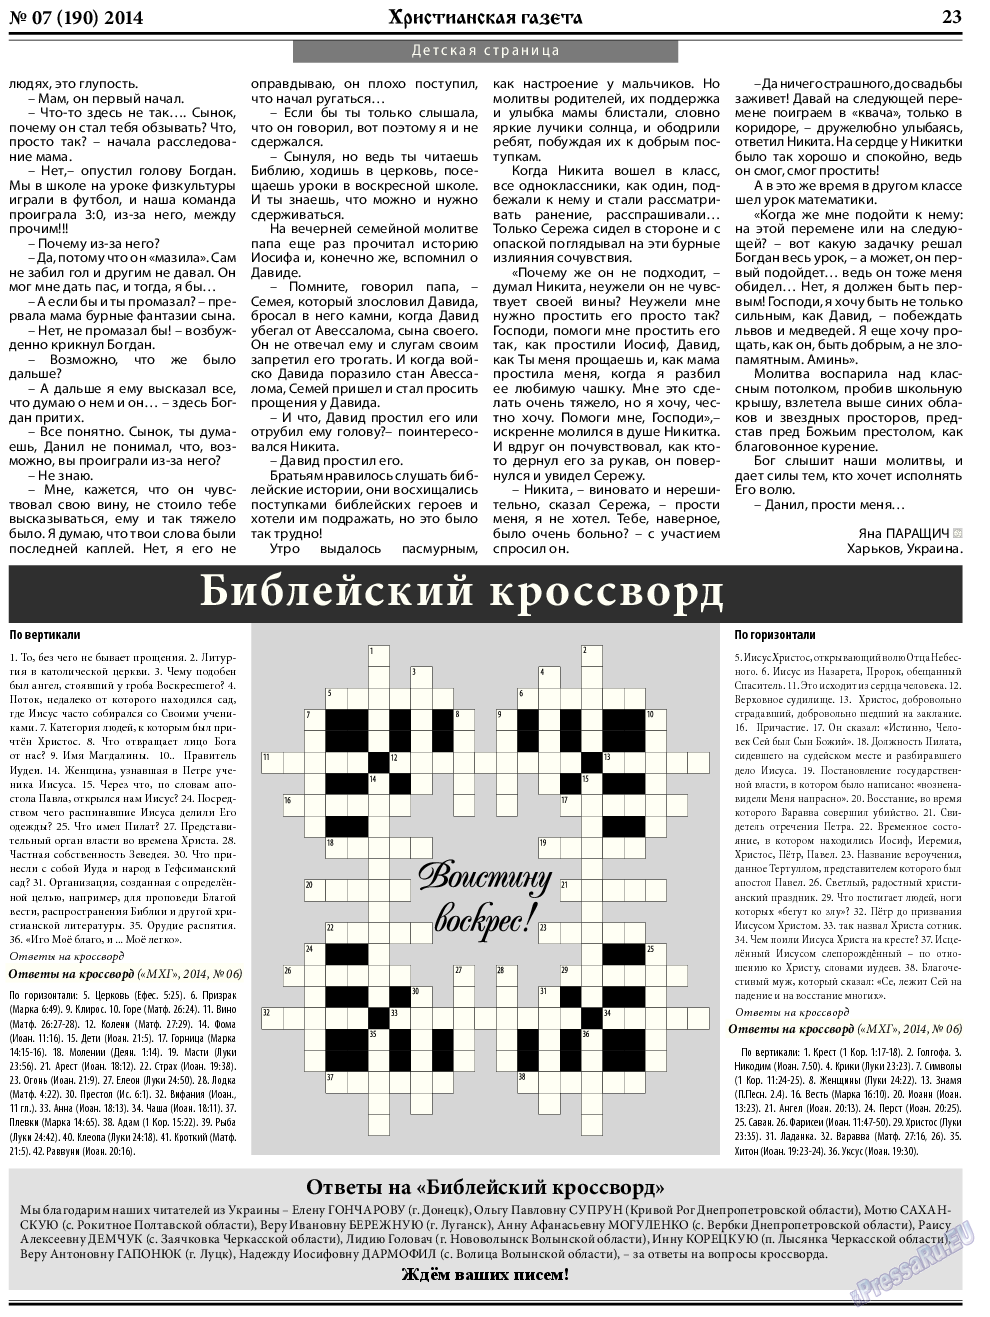 Христианская газета, газета. 2014 №7 стр.31